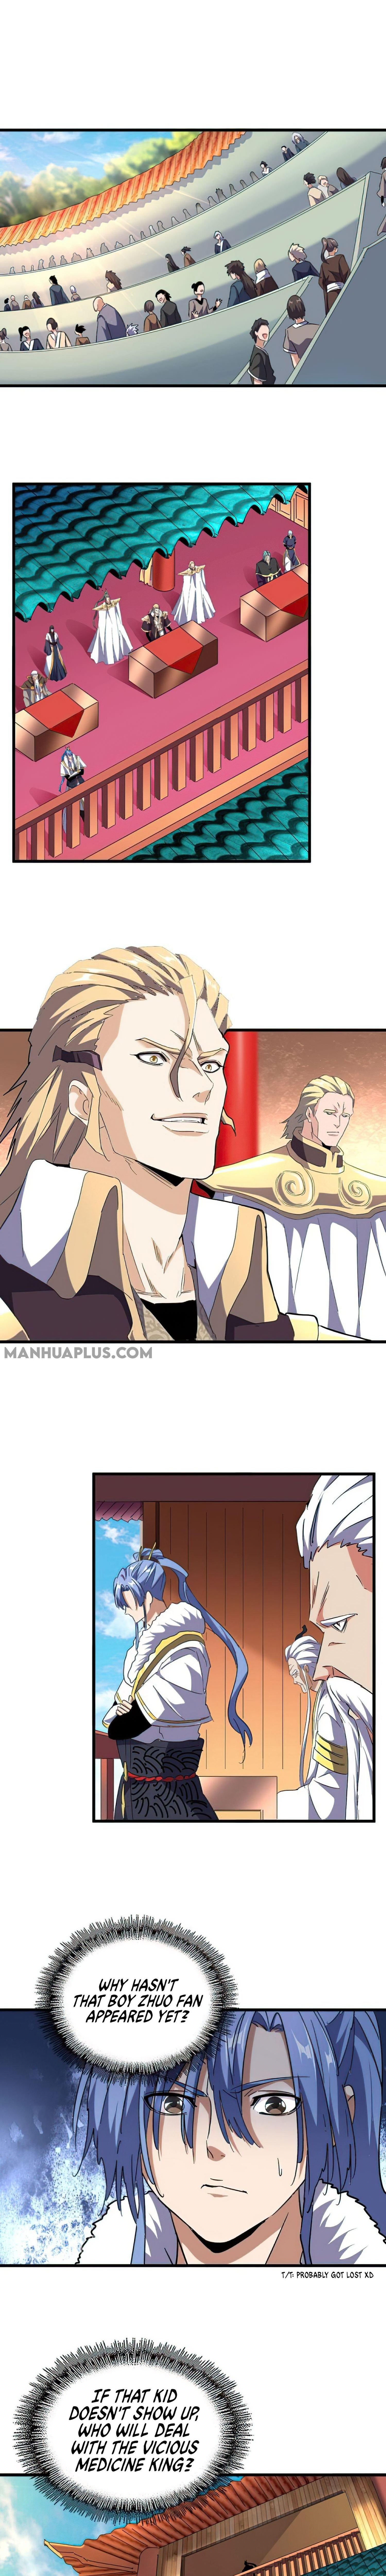 Magic Emperor Chapter 159 page 9 - Mangakakalot